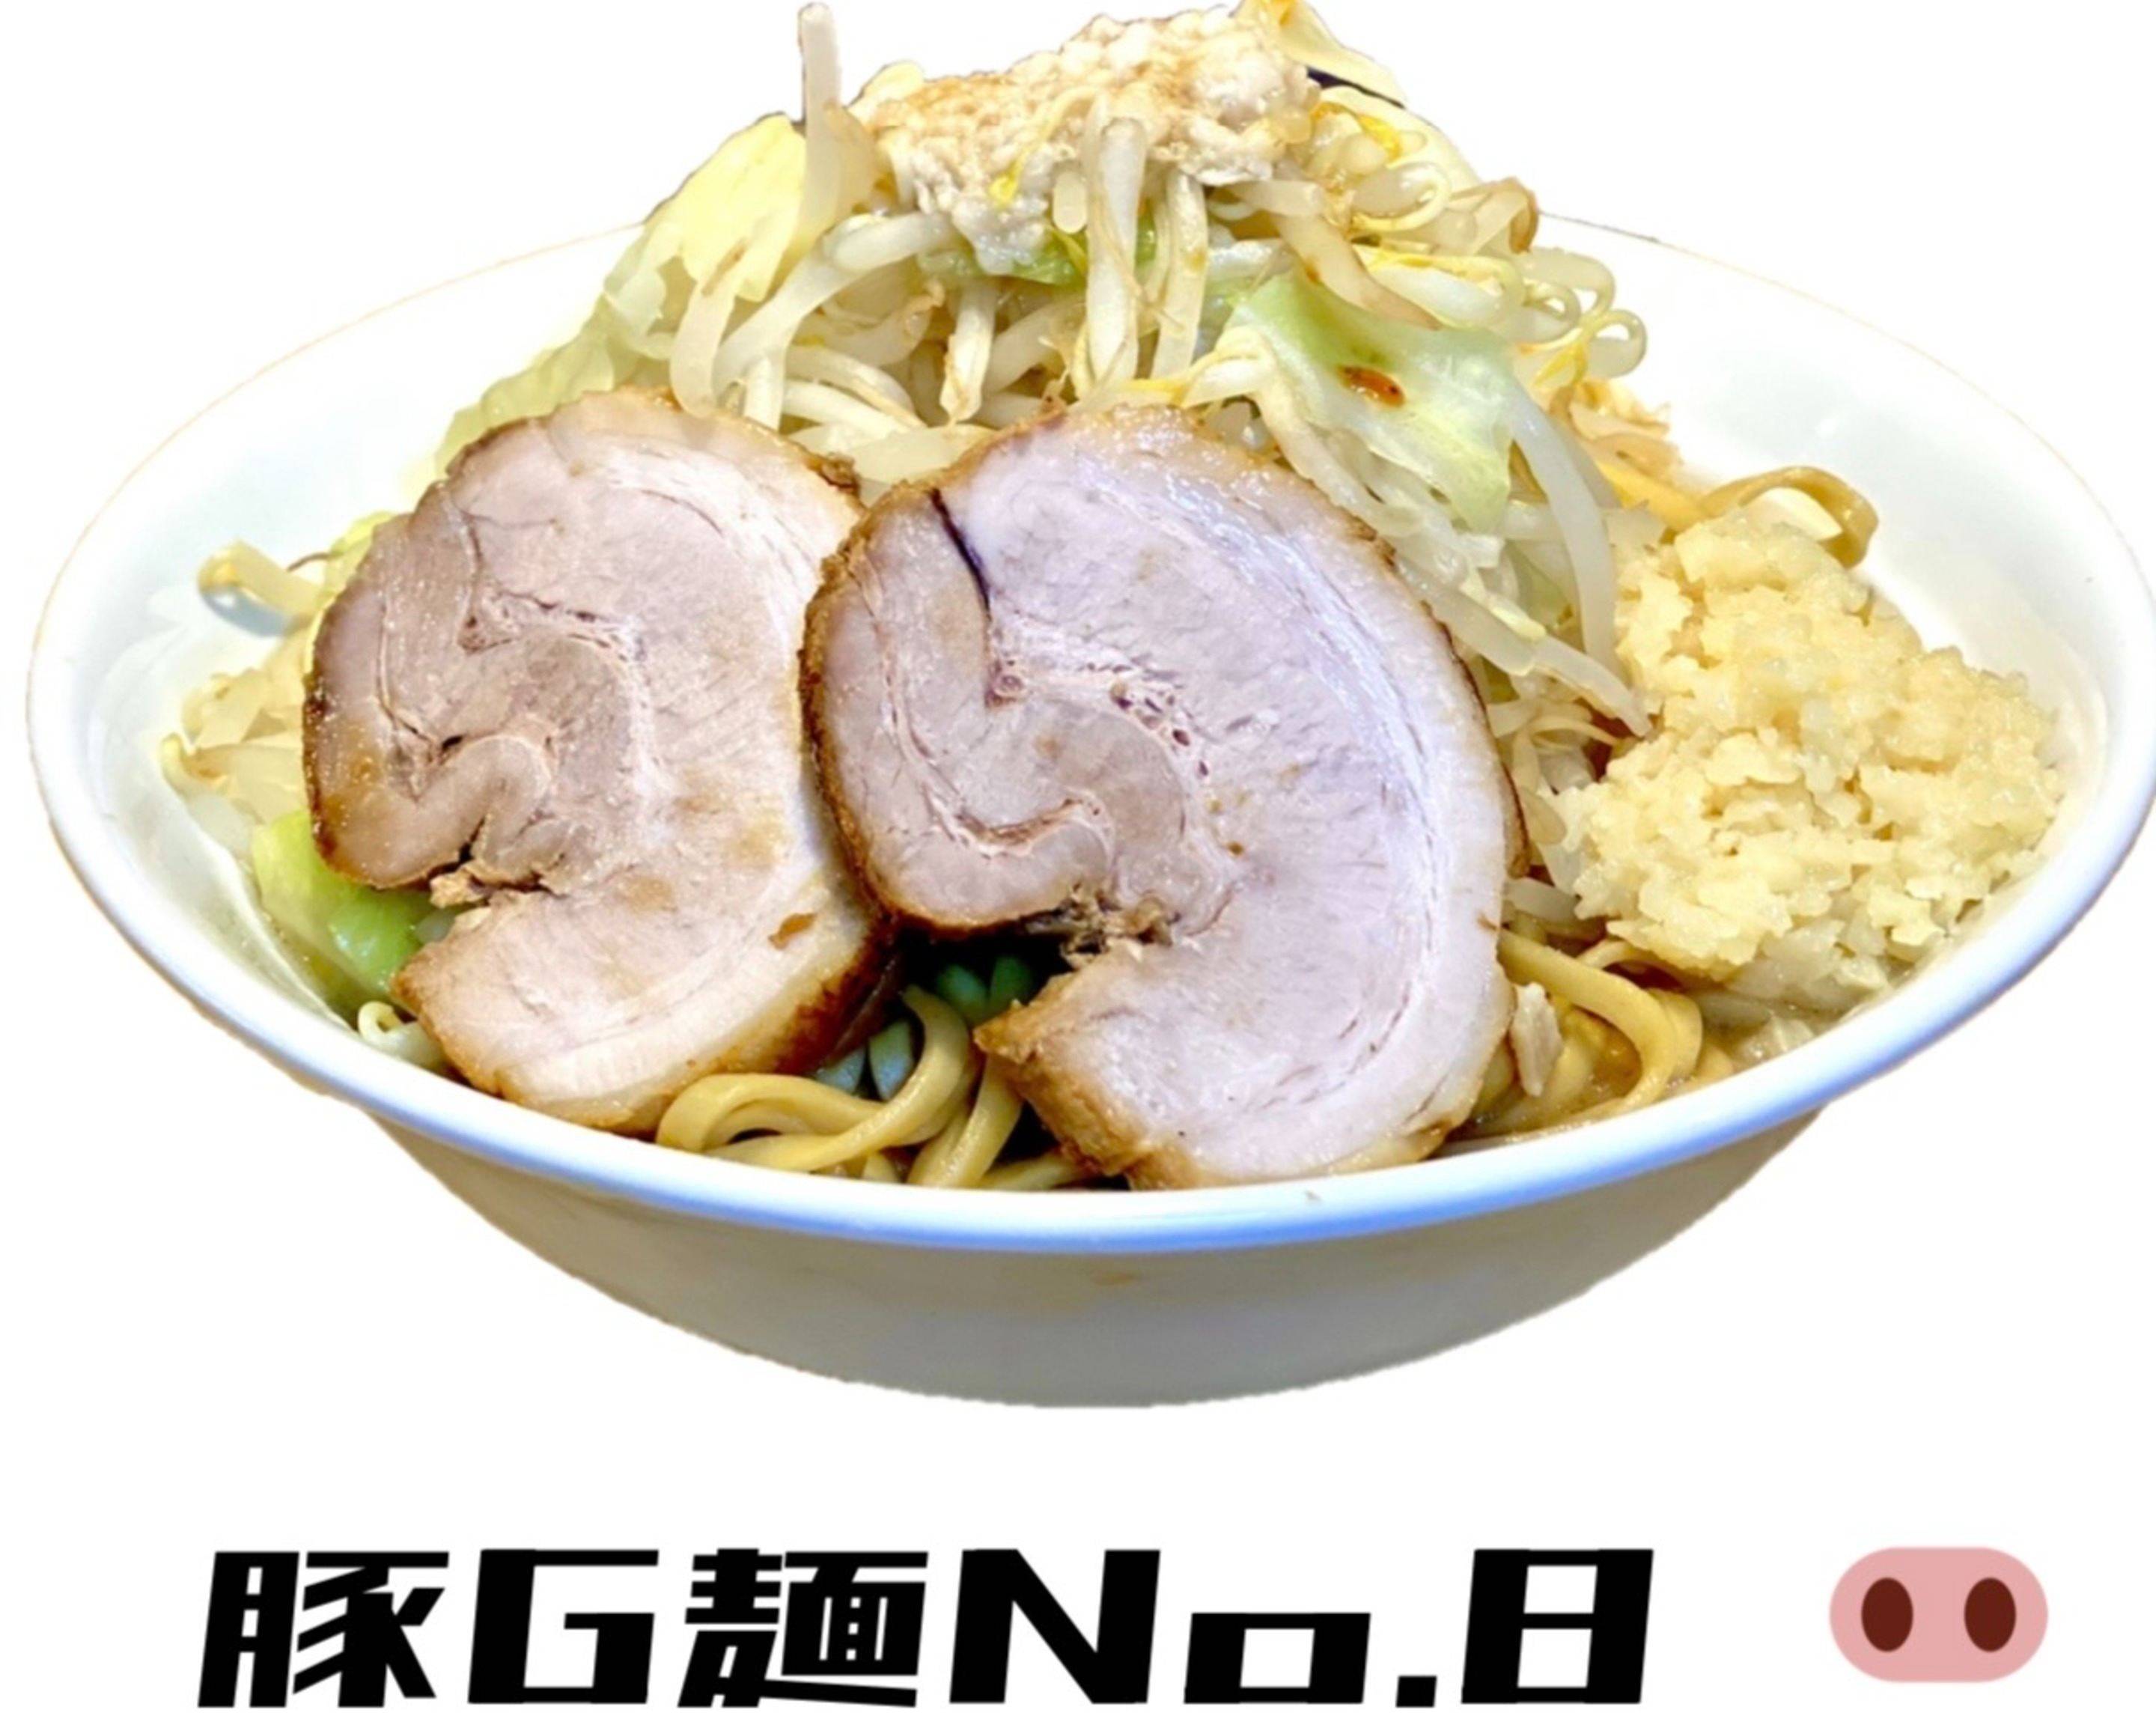 豚G麺No8の出前・宅配・テイクアウトメニュー | ウーバーイーツ